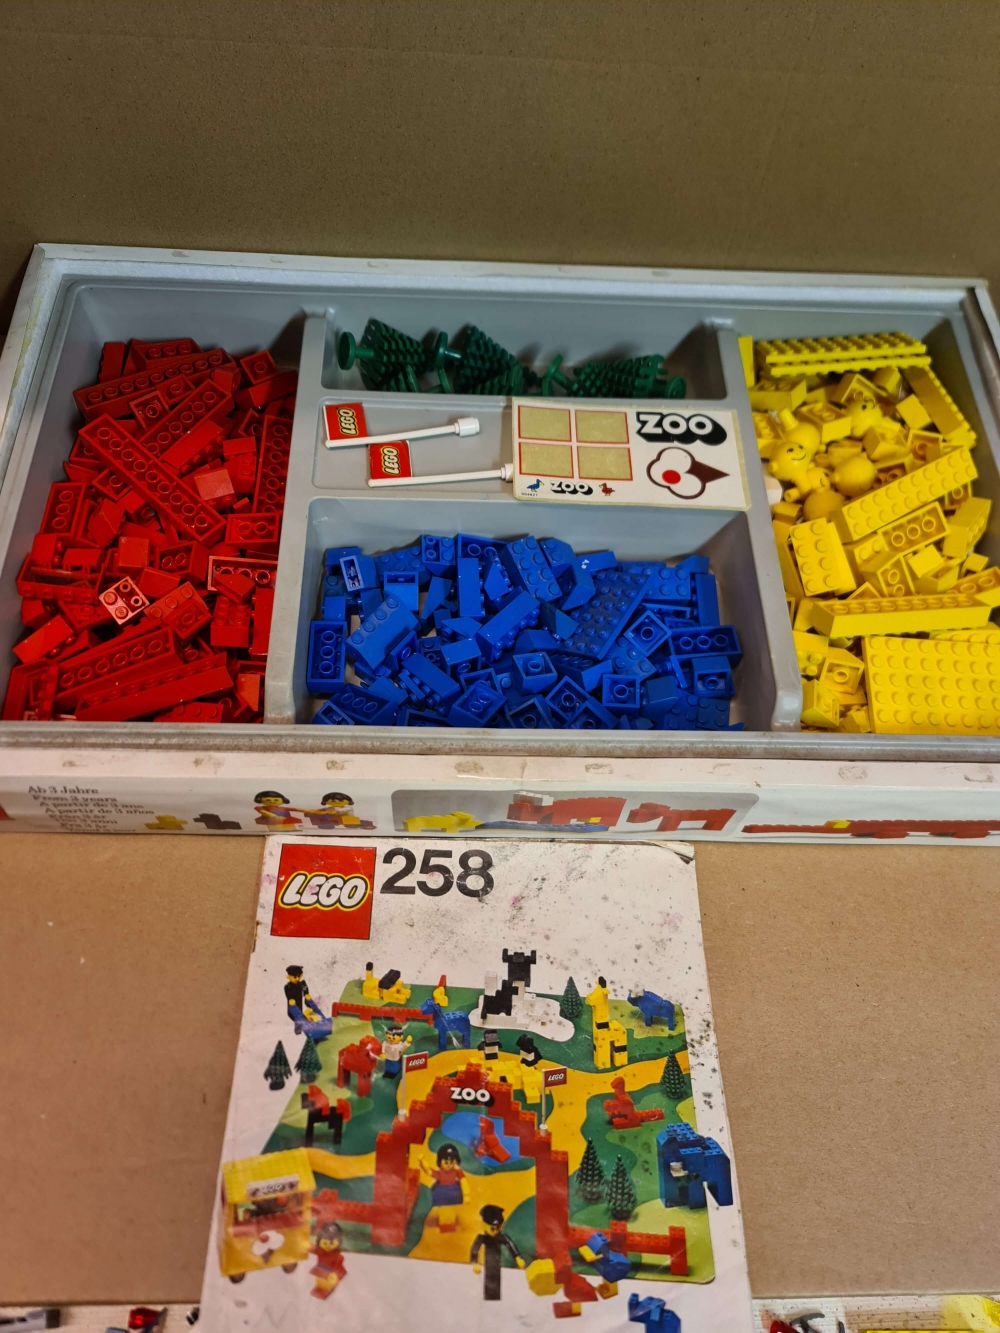 Sett 258 fra Lego Building Sets With People serien.
Settet er komplett foruten baseplaten.
I eske som mangler topplokk. Med manual som har fått noe fuktskade.
Kun klistremerker til flaggene som er brukt. Resten sitter nye på arket. 